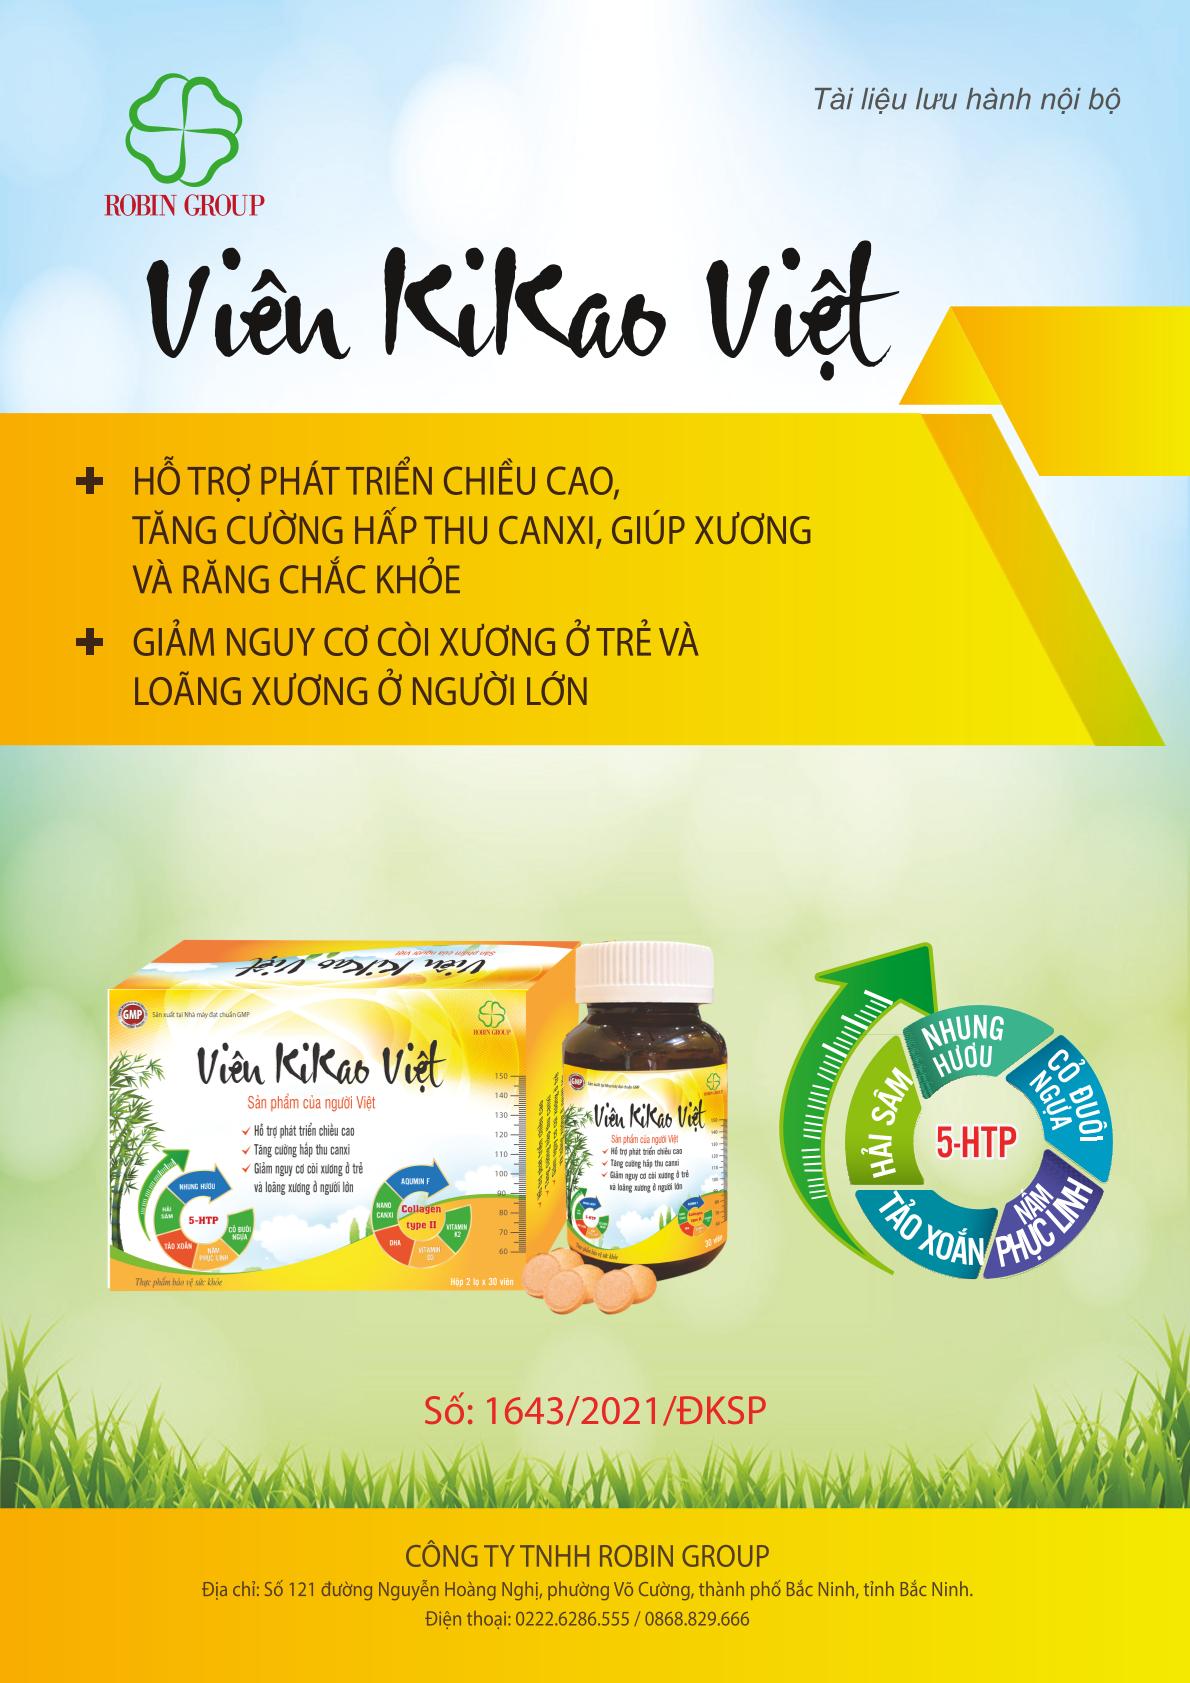 Vien kikao Viet tăng chiều cao bổ sung canxi chống còi xương loãng xương